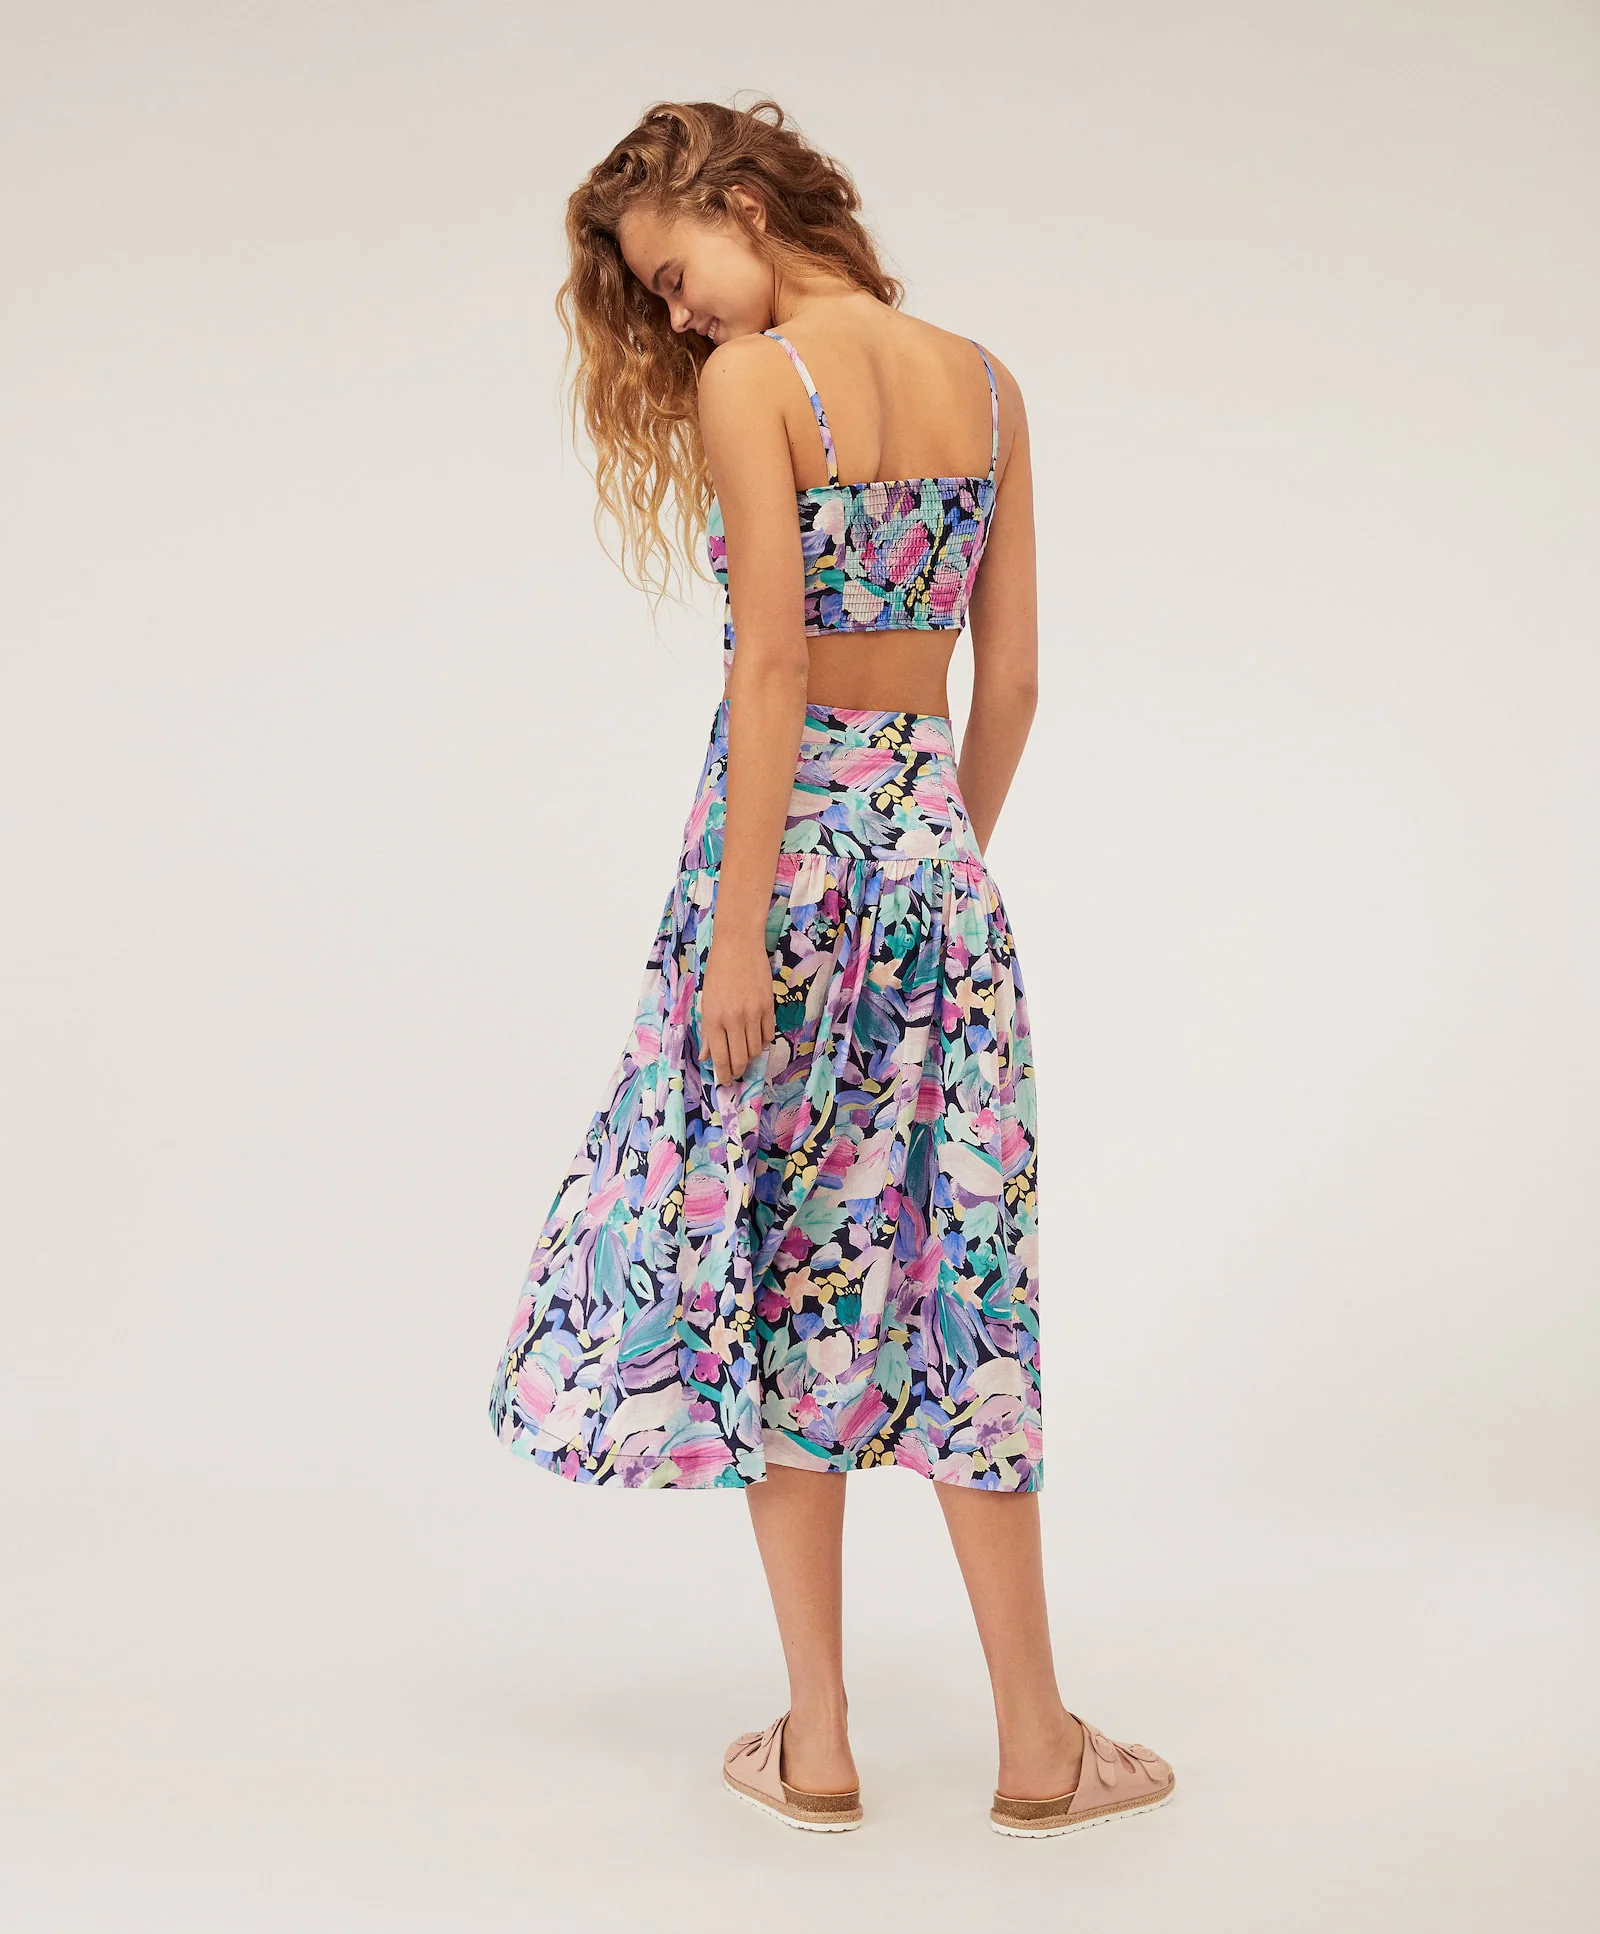 Falda de largo 'midi' con estampado floral en tonos malvas y turquesas, de Oysho (23,99 euros)